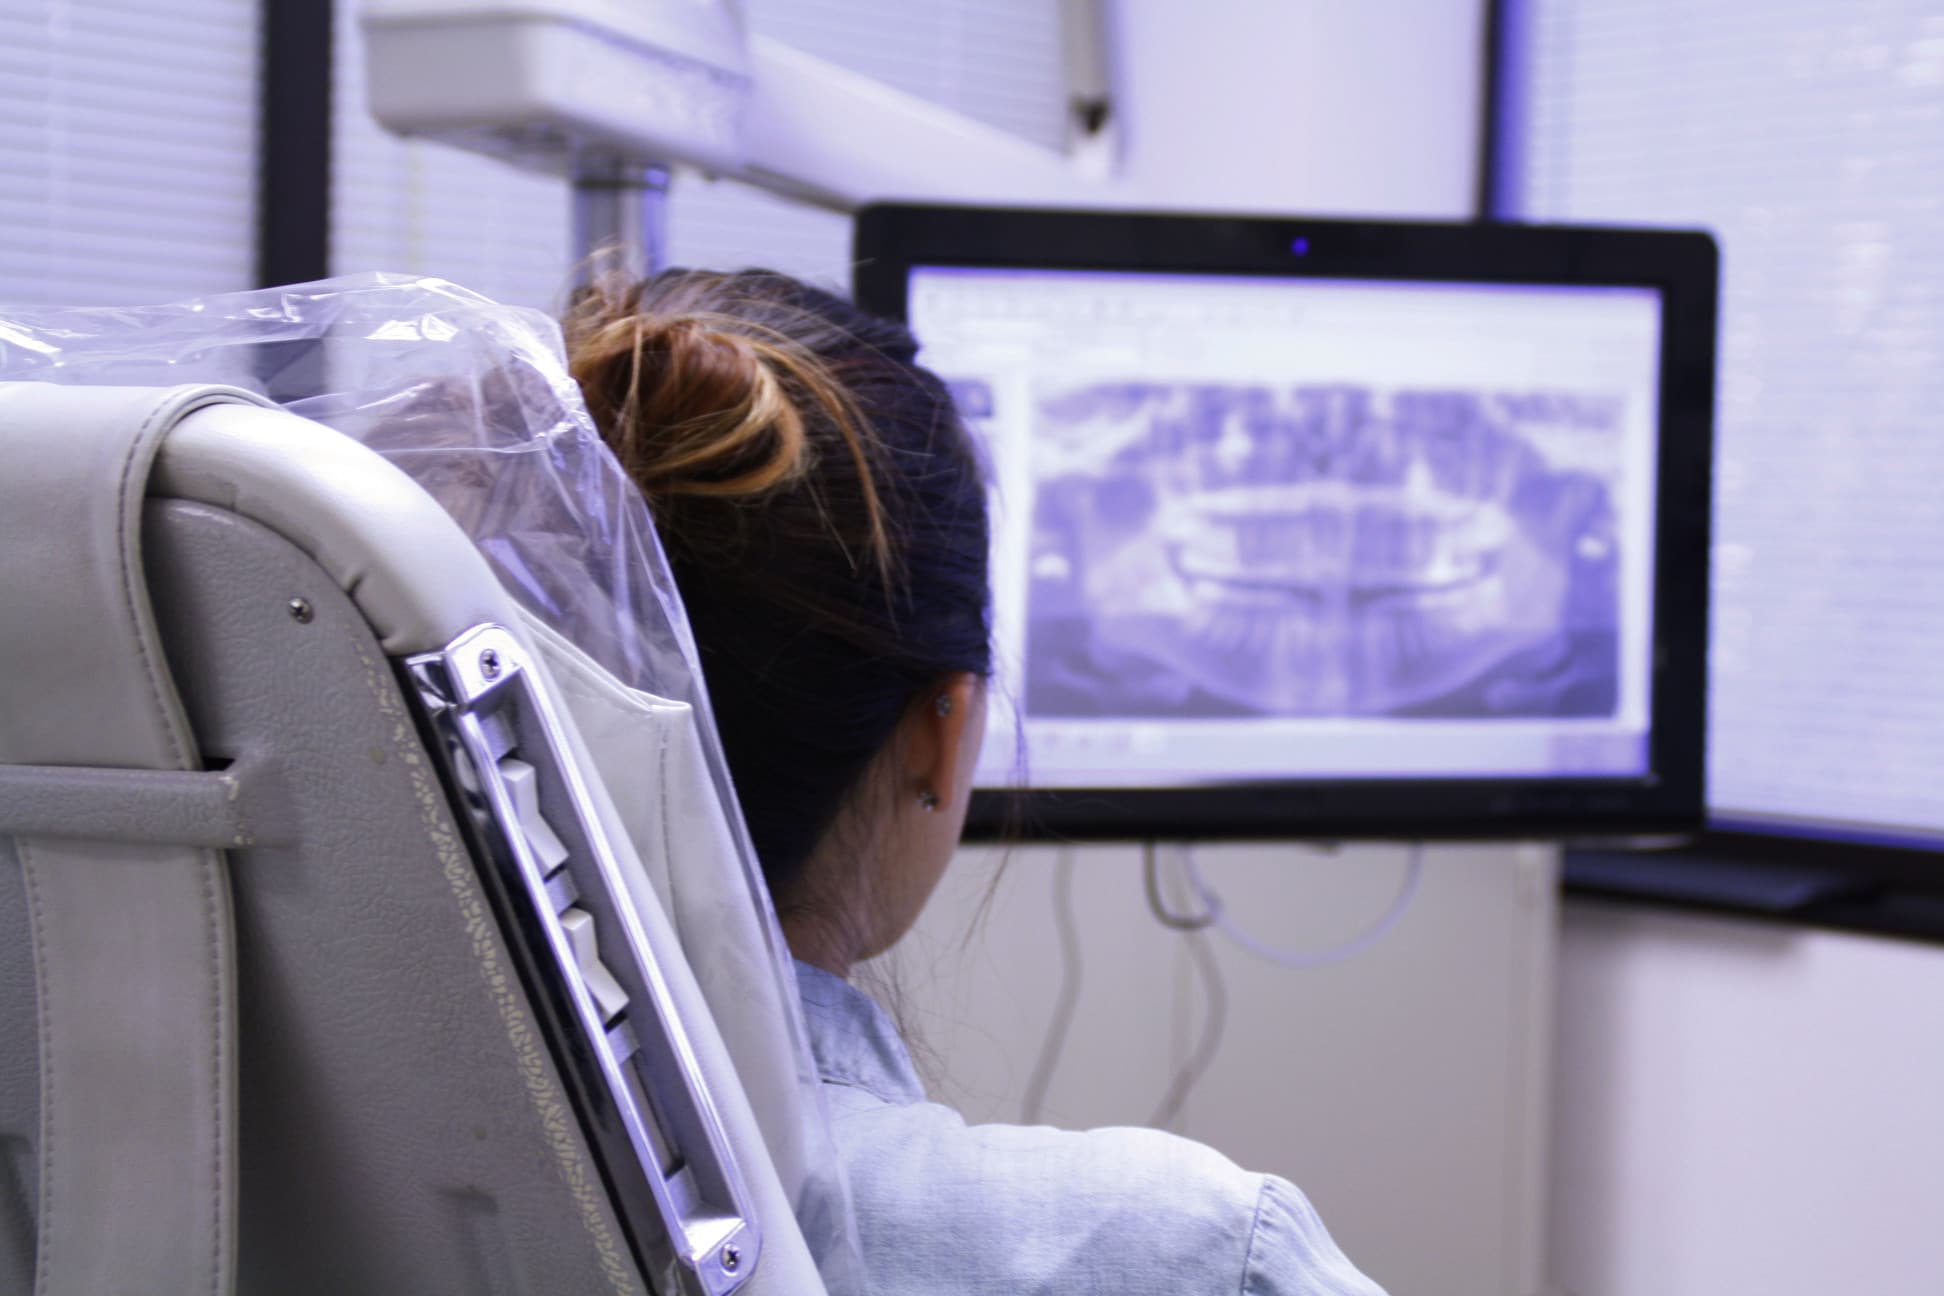 Un patient est assis dans un fauteuil dentaire et regarde une radiographie des dents affichée sur un écran d'ordinateur, discutant de son traitement orthodontique lingual.